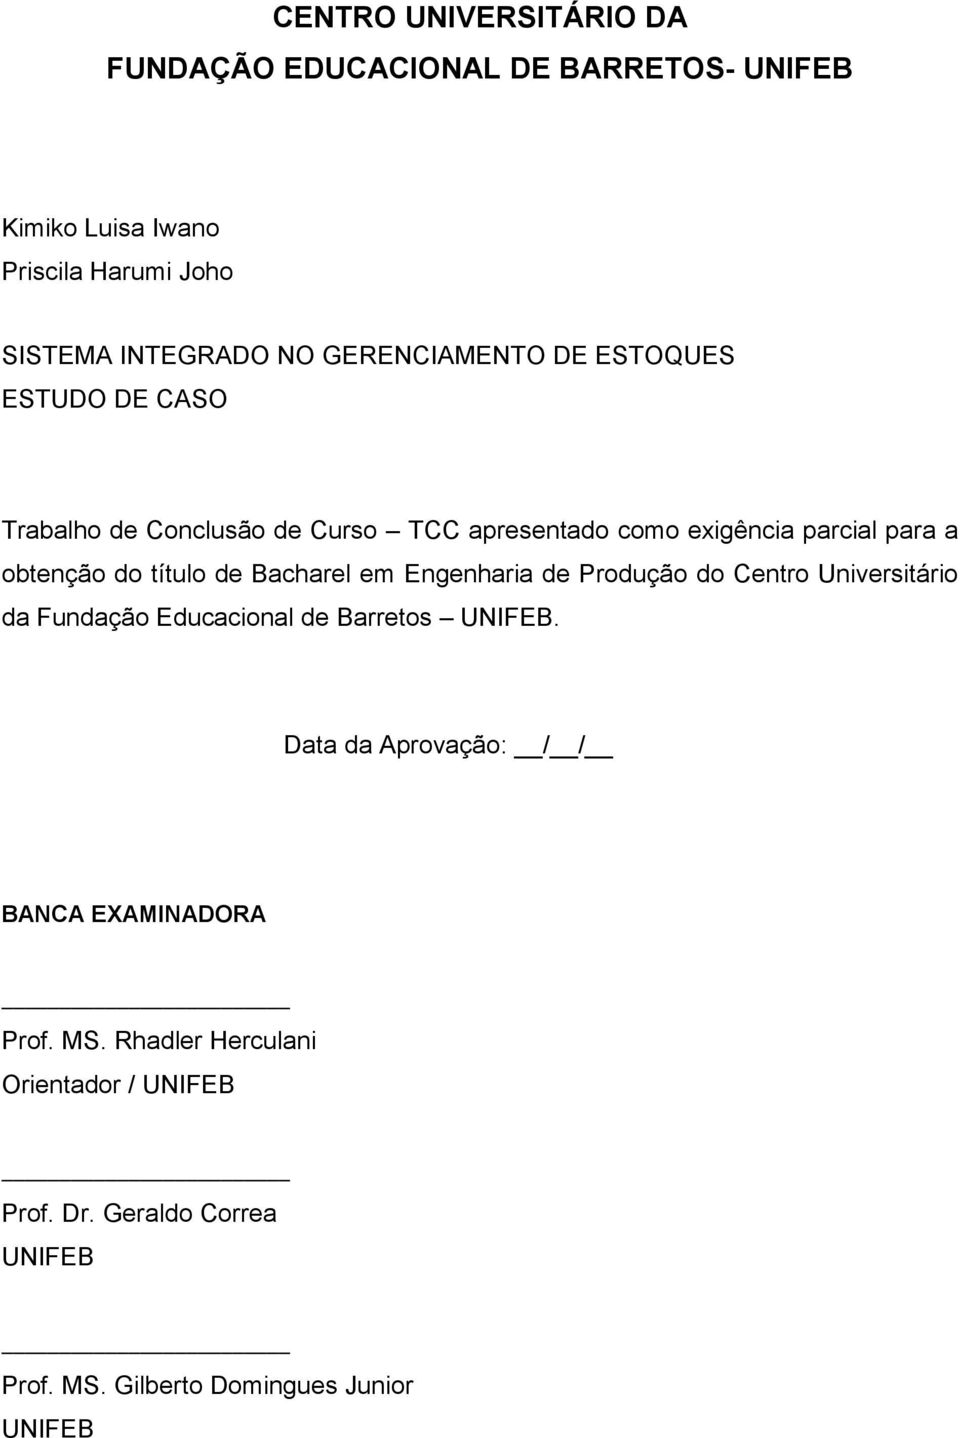 título de Bacharel em Engenharia de Produção do Centro Universitário da Fundação Educacional de Barretos UNIFEB.